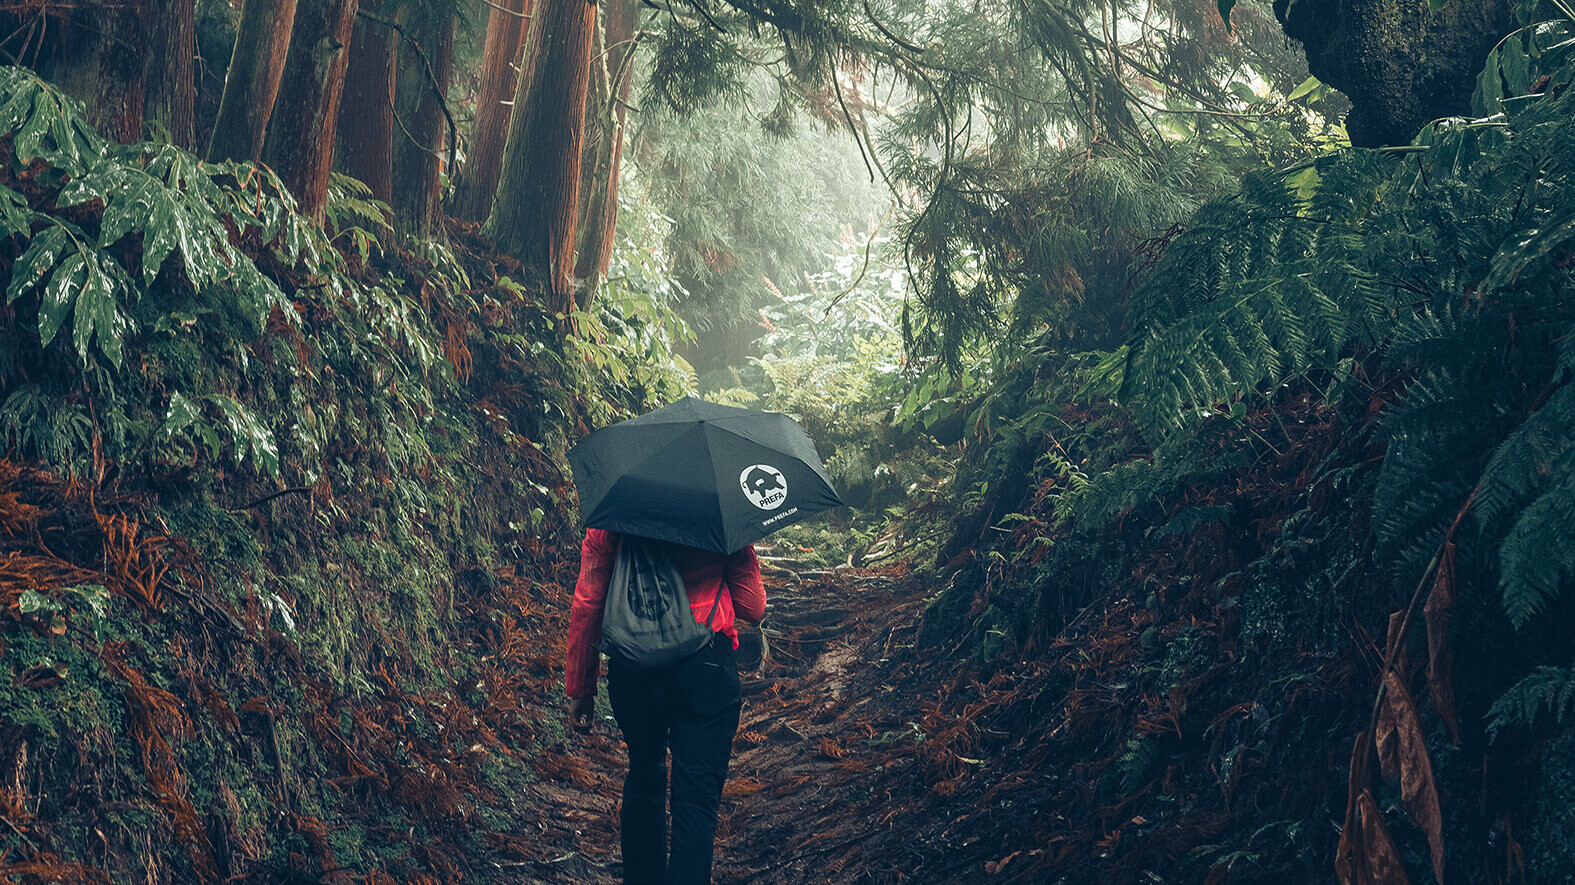 Snímka v lese s turistkou v červenej bunde s dáždnikom PREFA a vreckom na cvičenie, symbolizuje ochranu životného prostredia a trvalú udržateľnosť PREFA, ako aj obehové hospodárstvo a recykláciu.